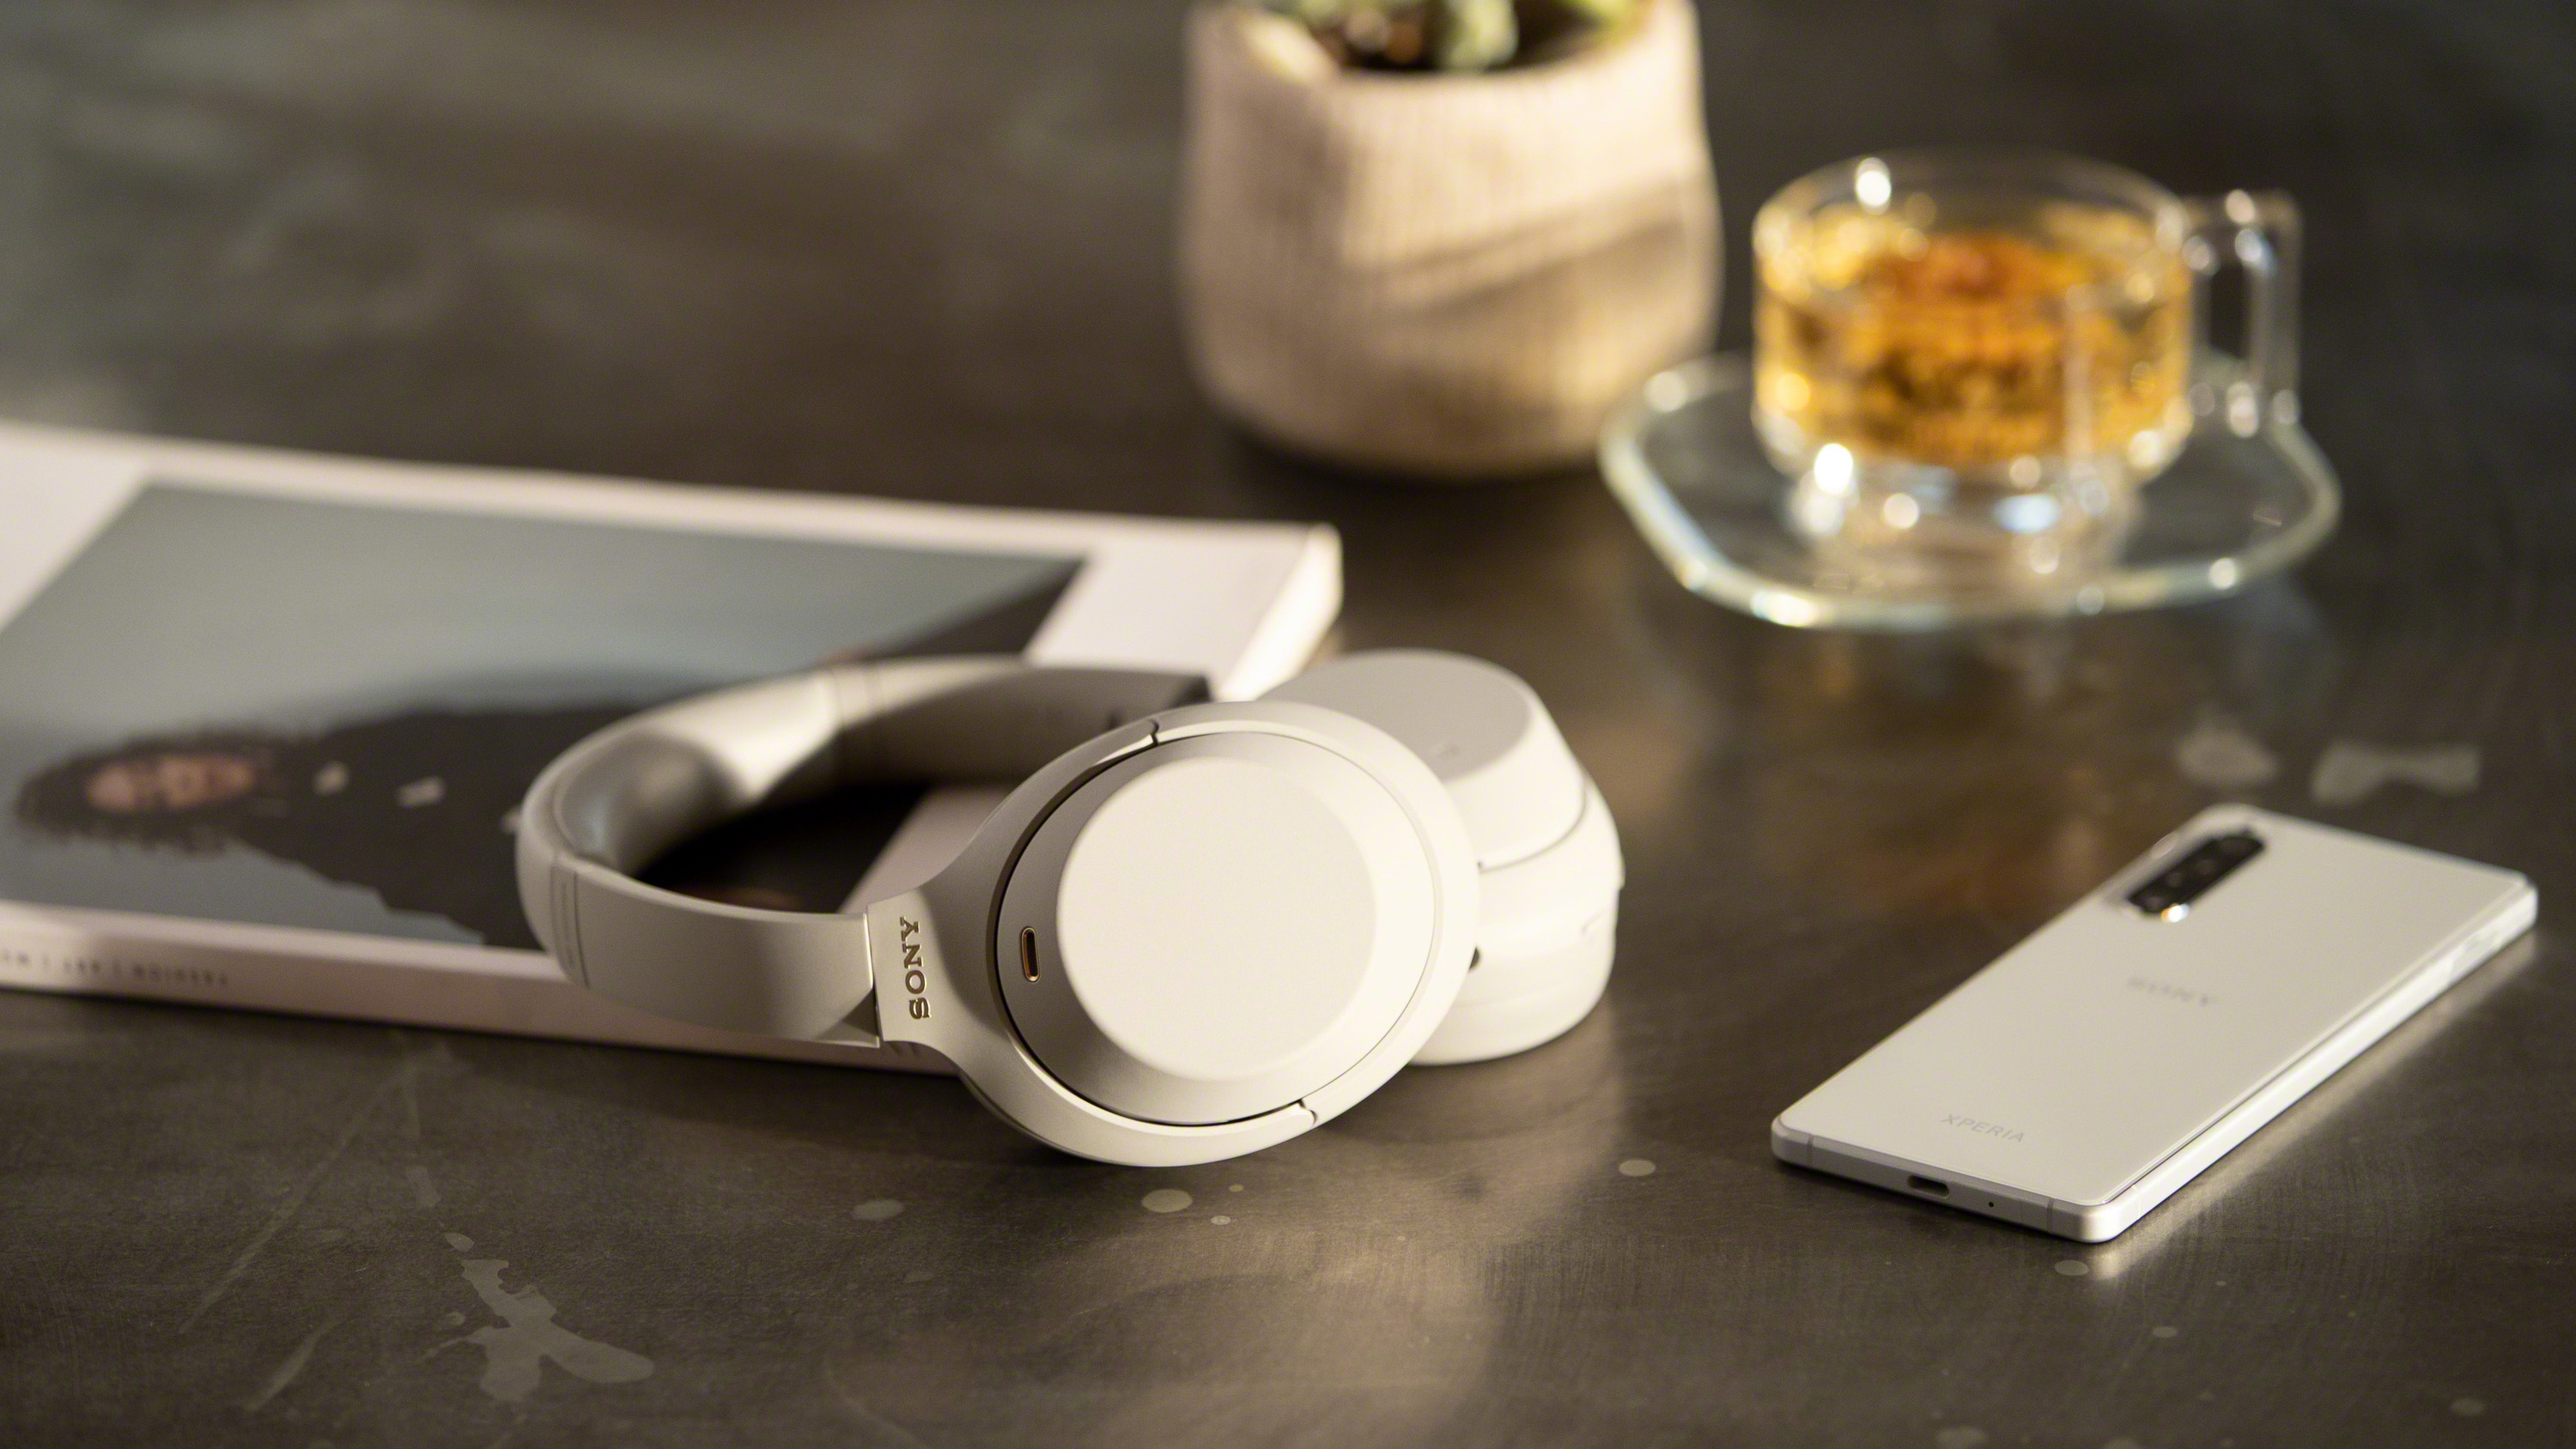 Sepasang headphone sony wh-1000xm4 berwarna putih di atas meja gelap di samping majalah dan smartphone berwarna perak